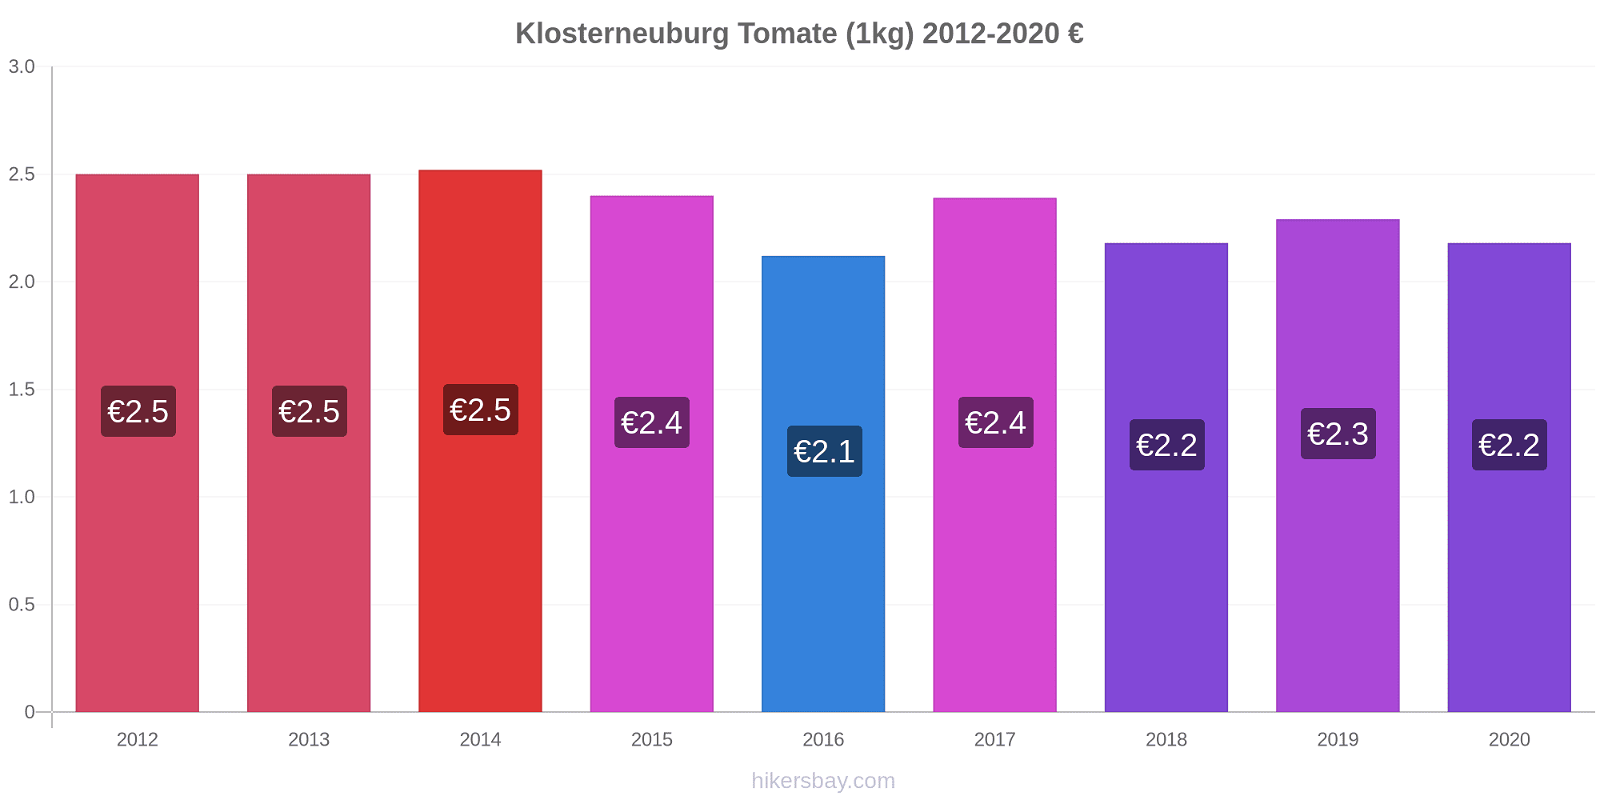 Klosterneuburg modificări de preț Tomate (1kg) hikersbay.com